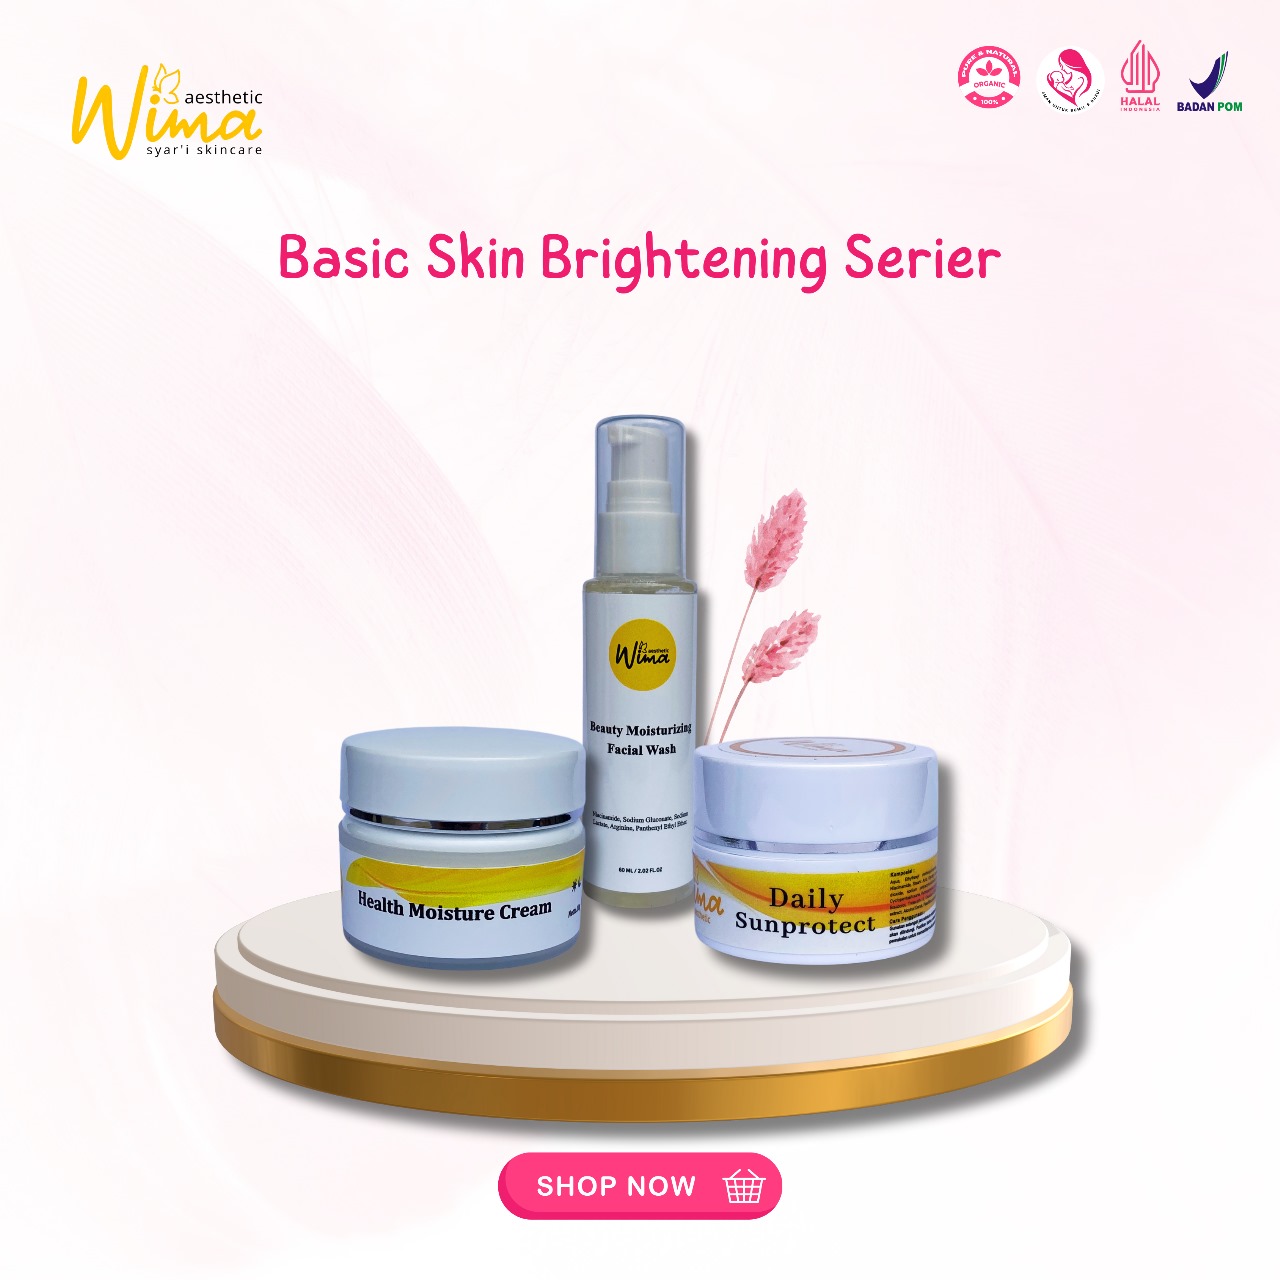 Wima Basic Skin Brightening Series